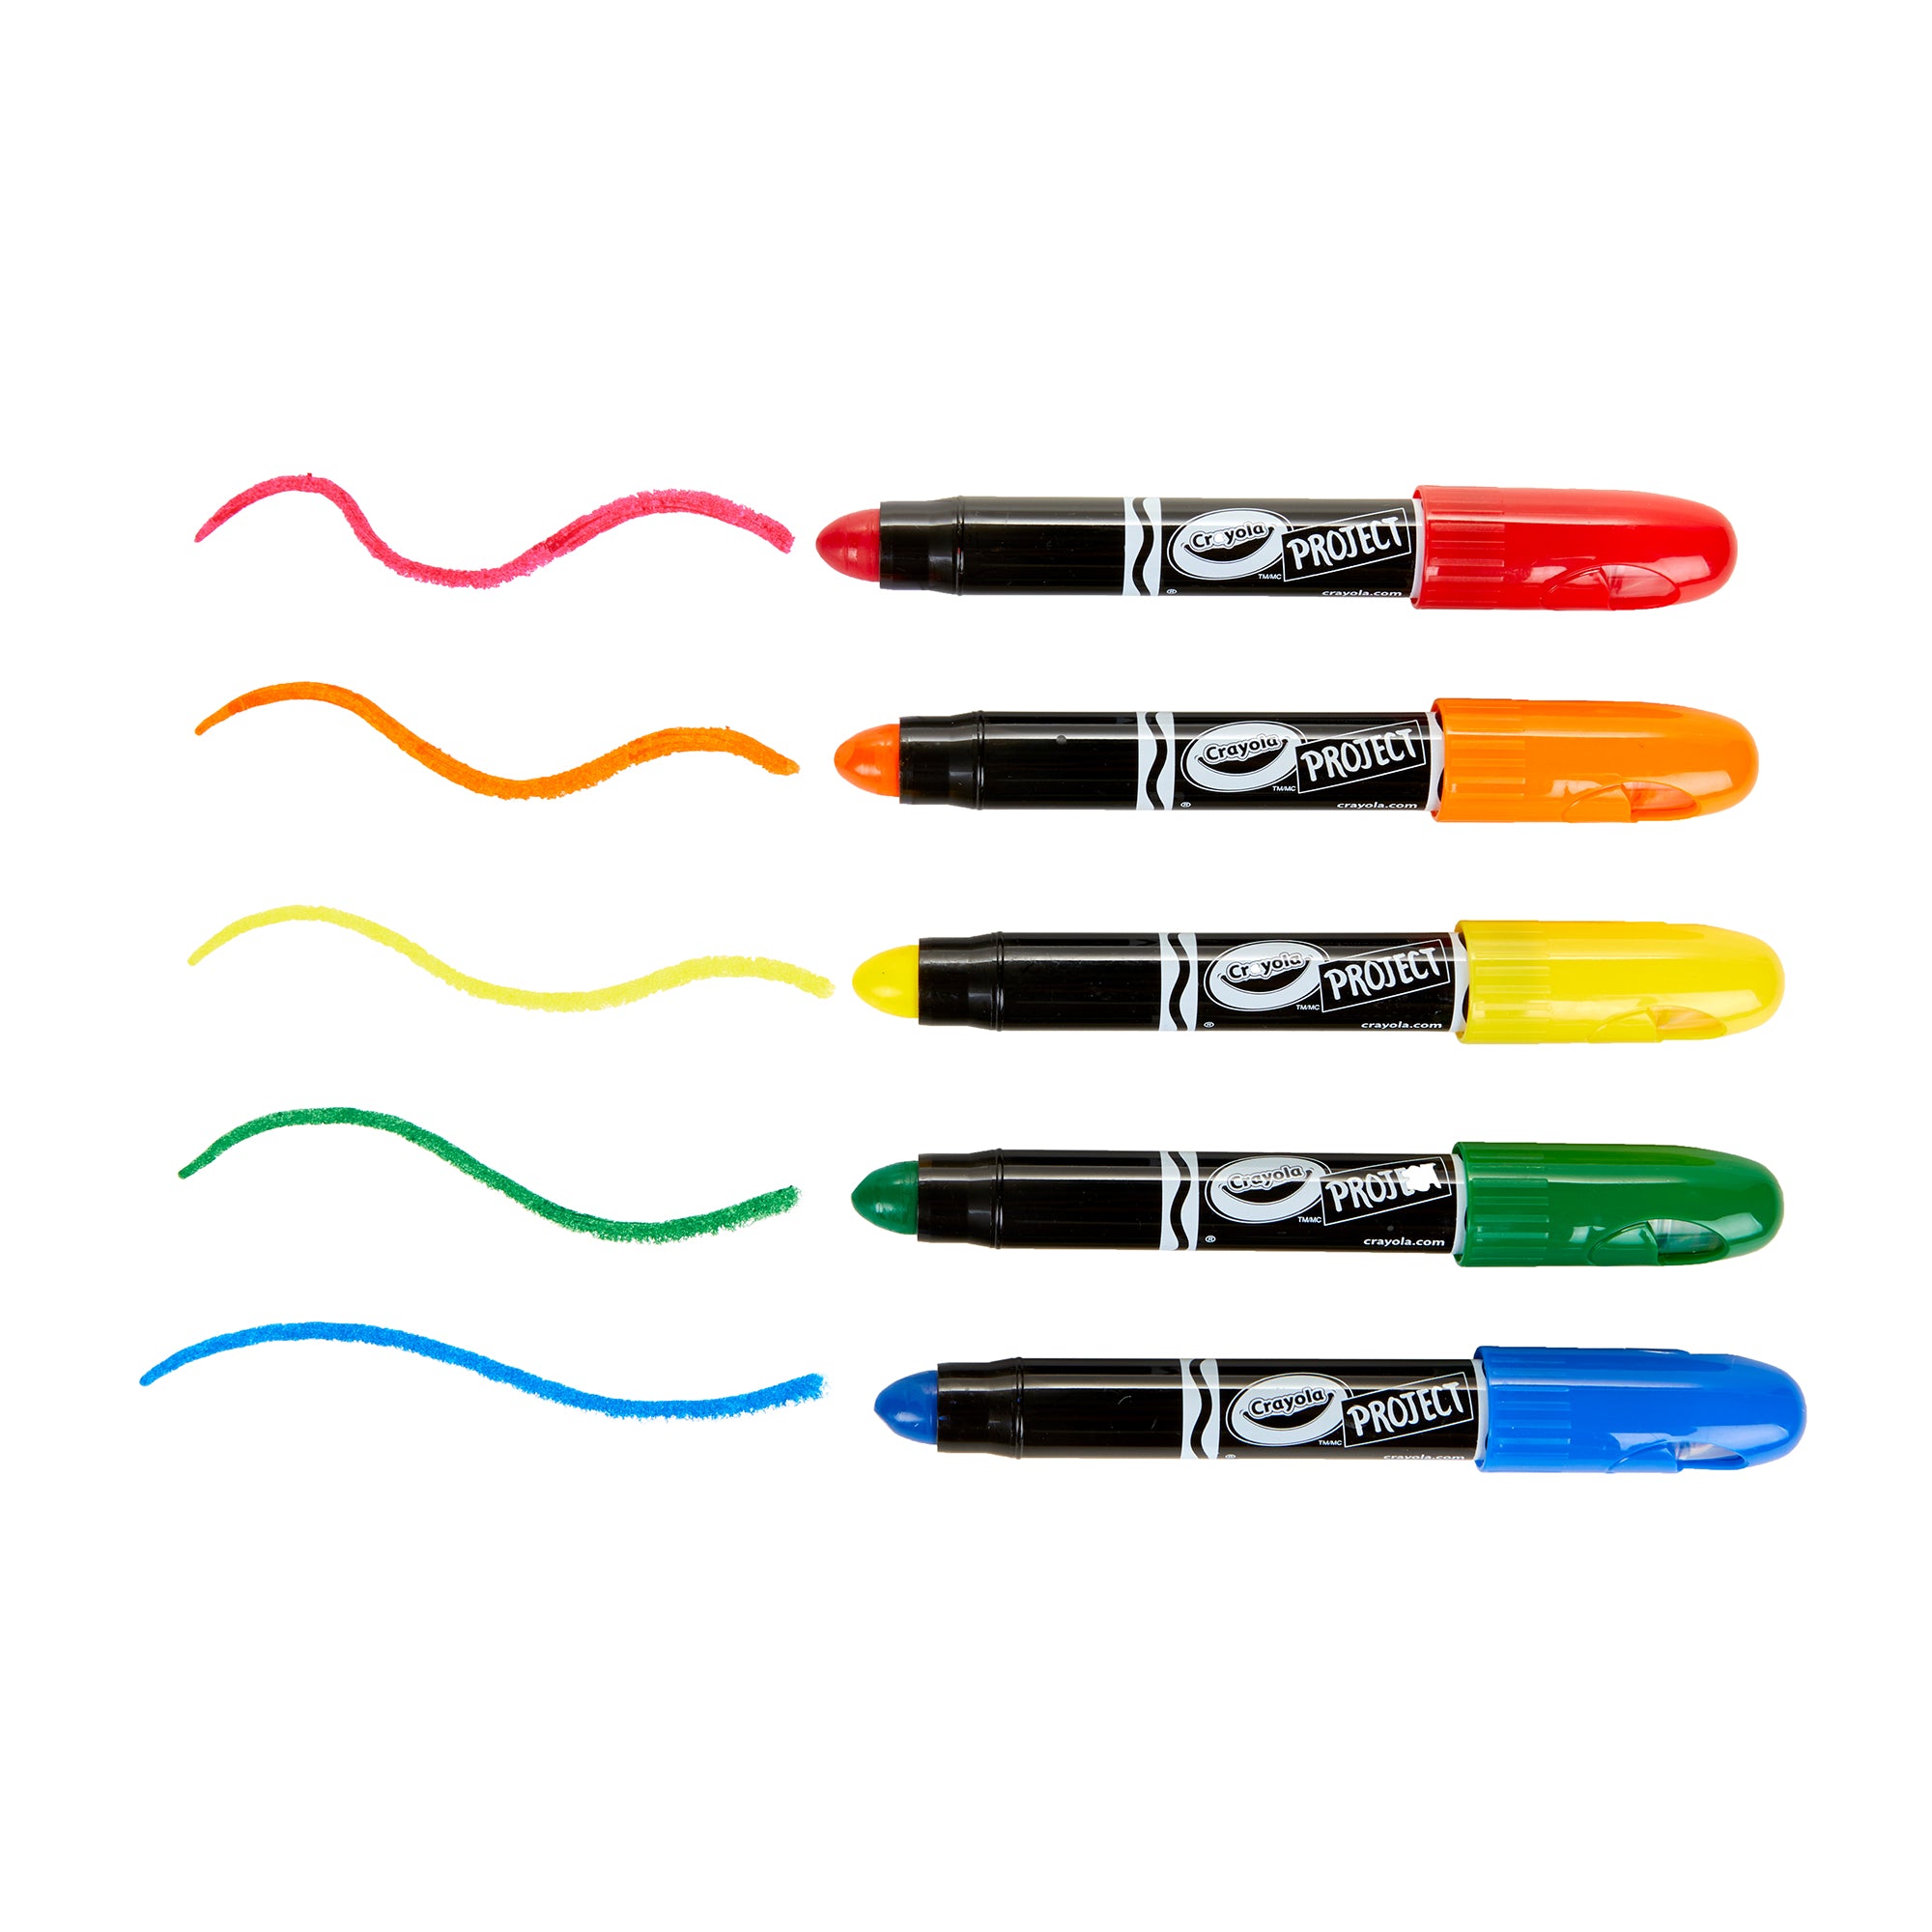 Crayola Project Gel Crayons, 5 Count